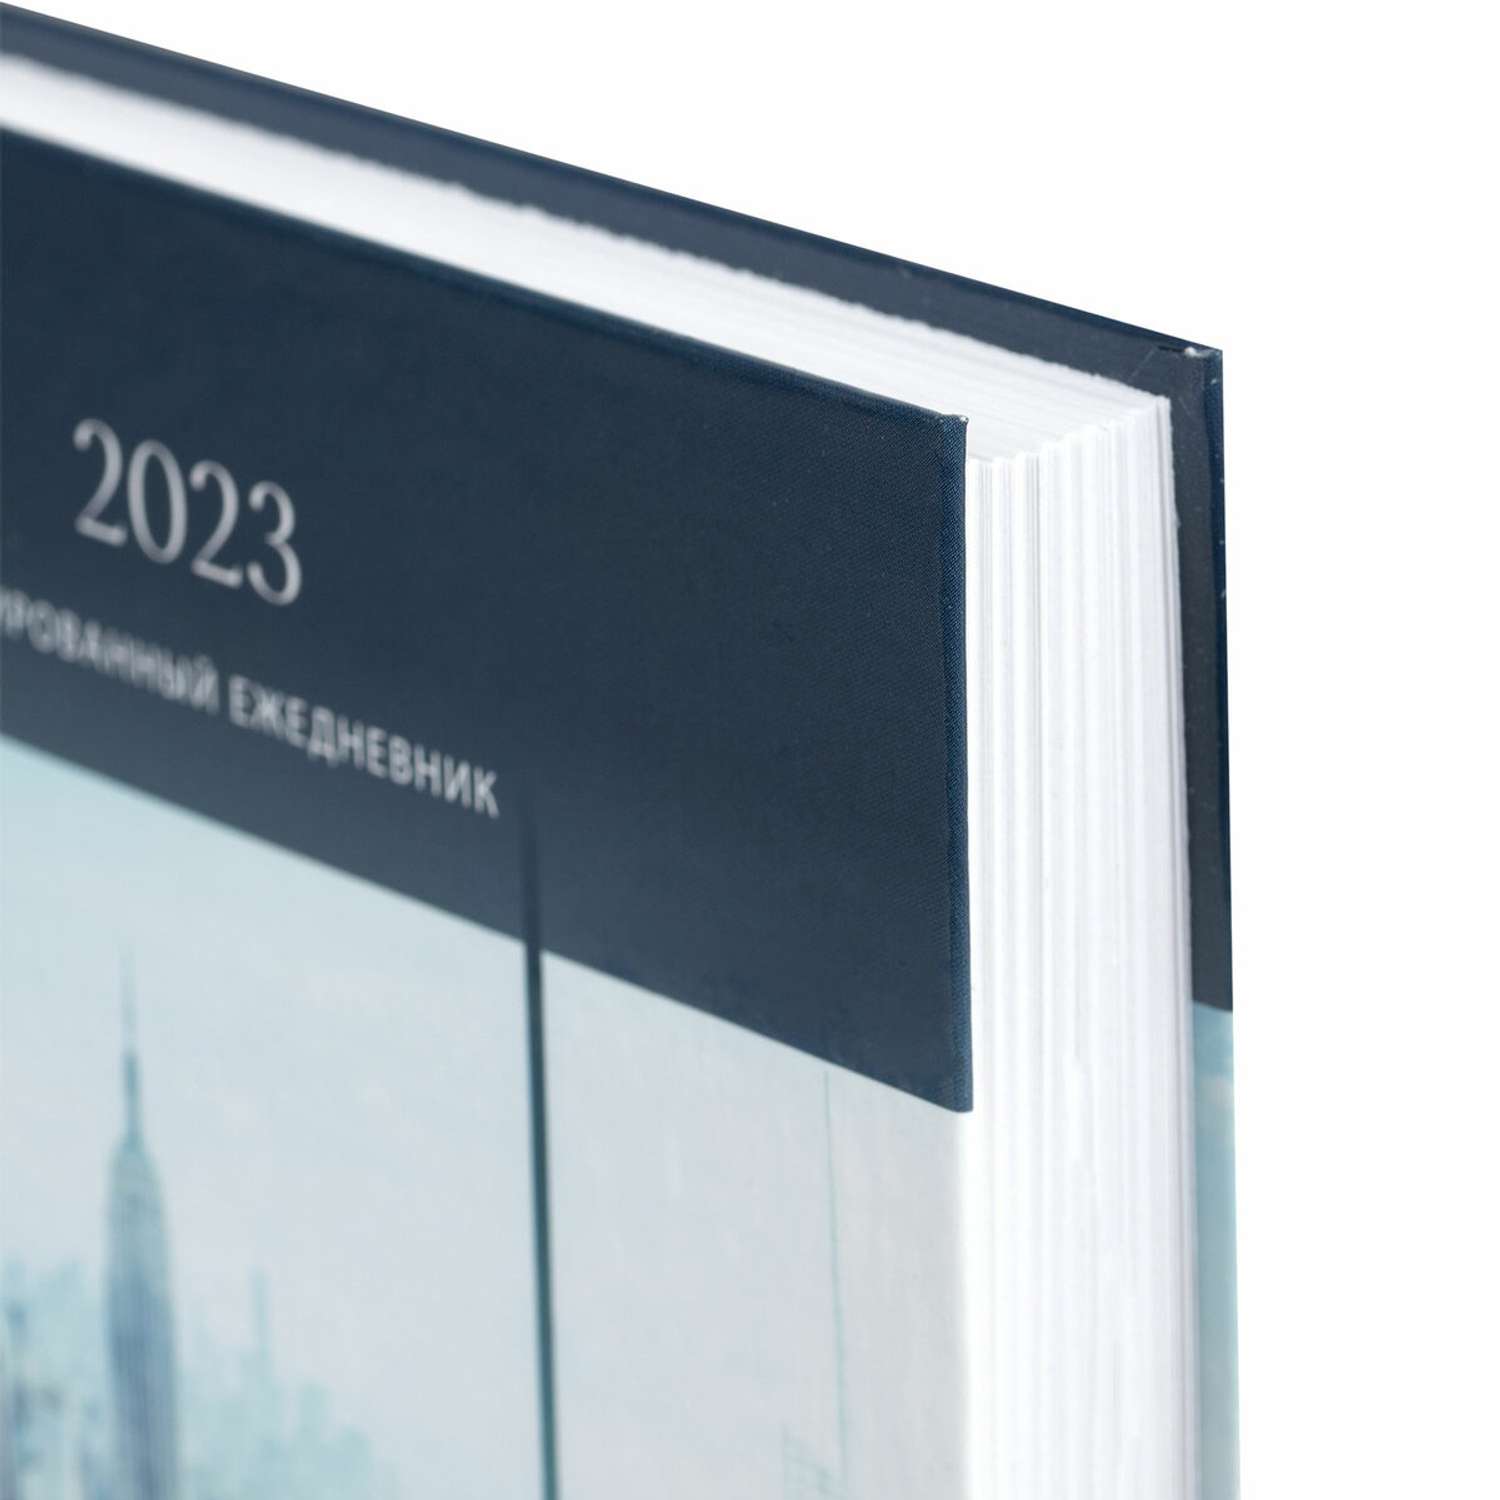 Ежедневник Staff датированный на 2023 год формата А5 - фото 2